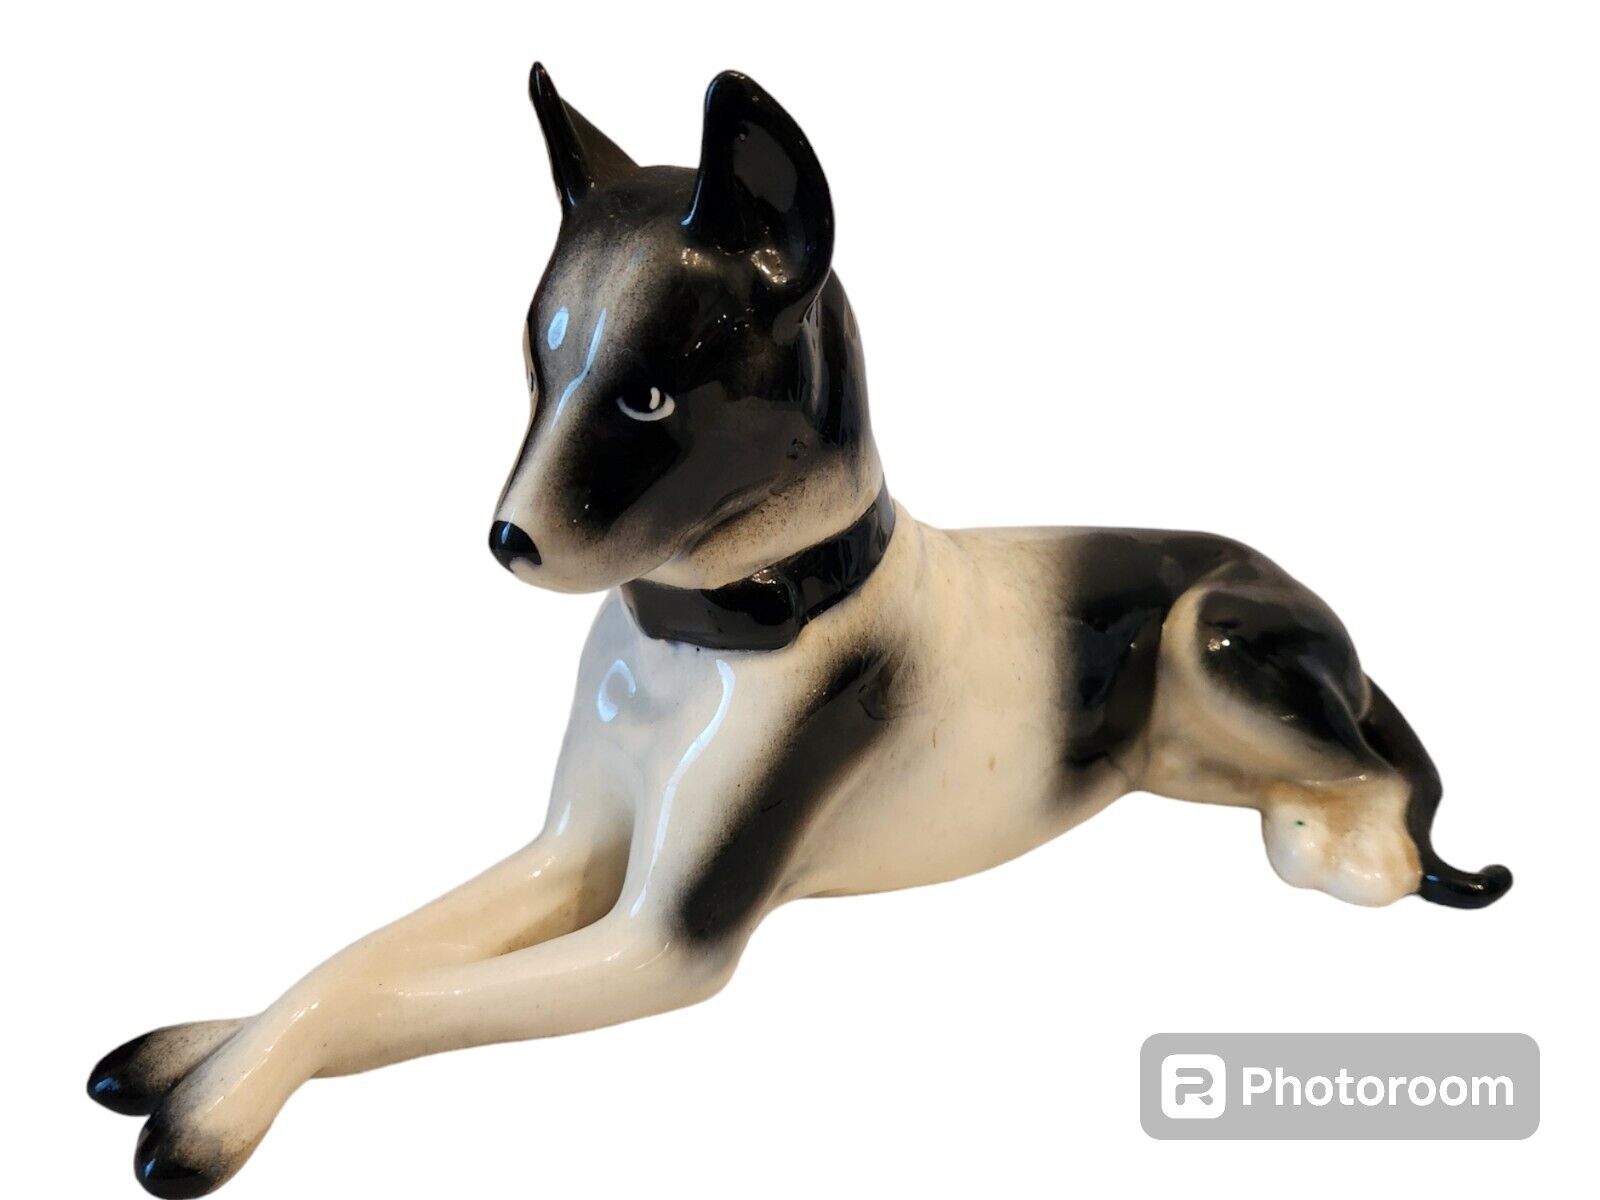 Vintage Great Dane Porcelain Figurine White and Black Dog 10” Long